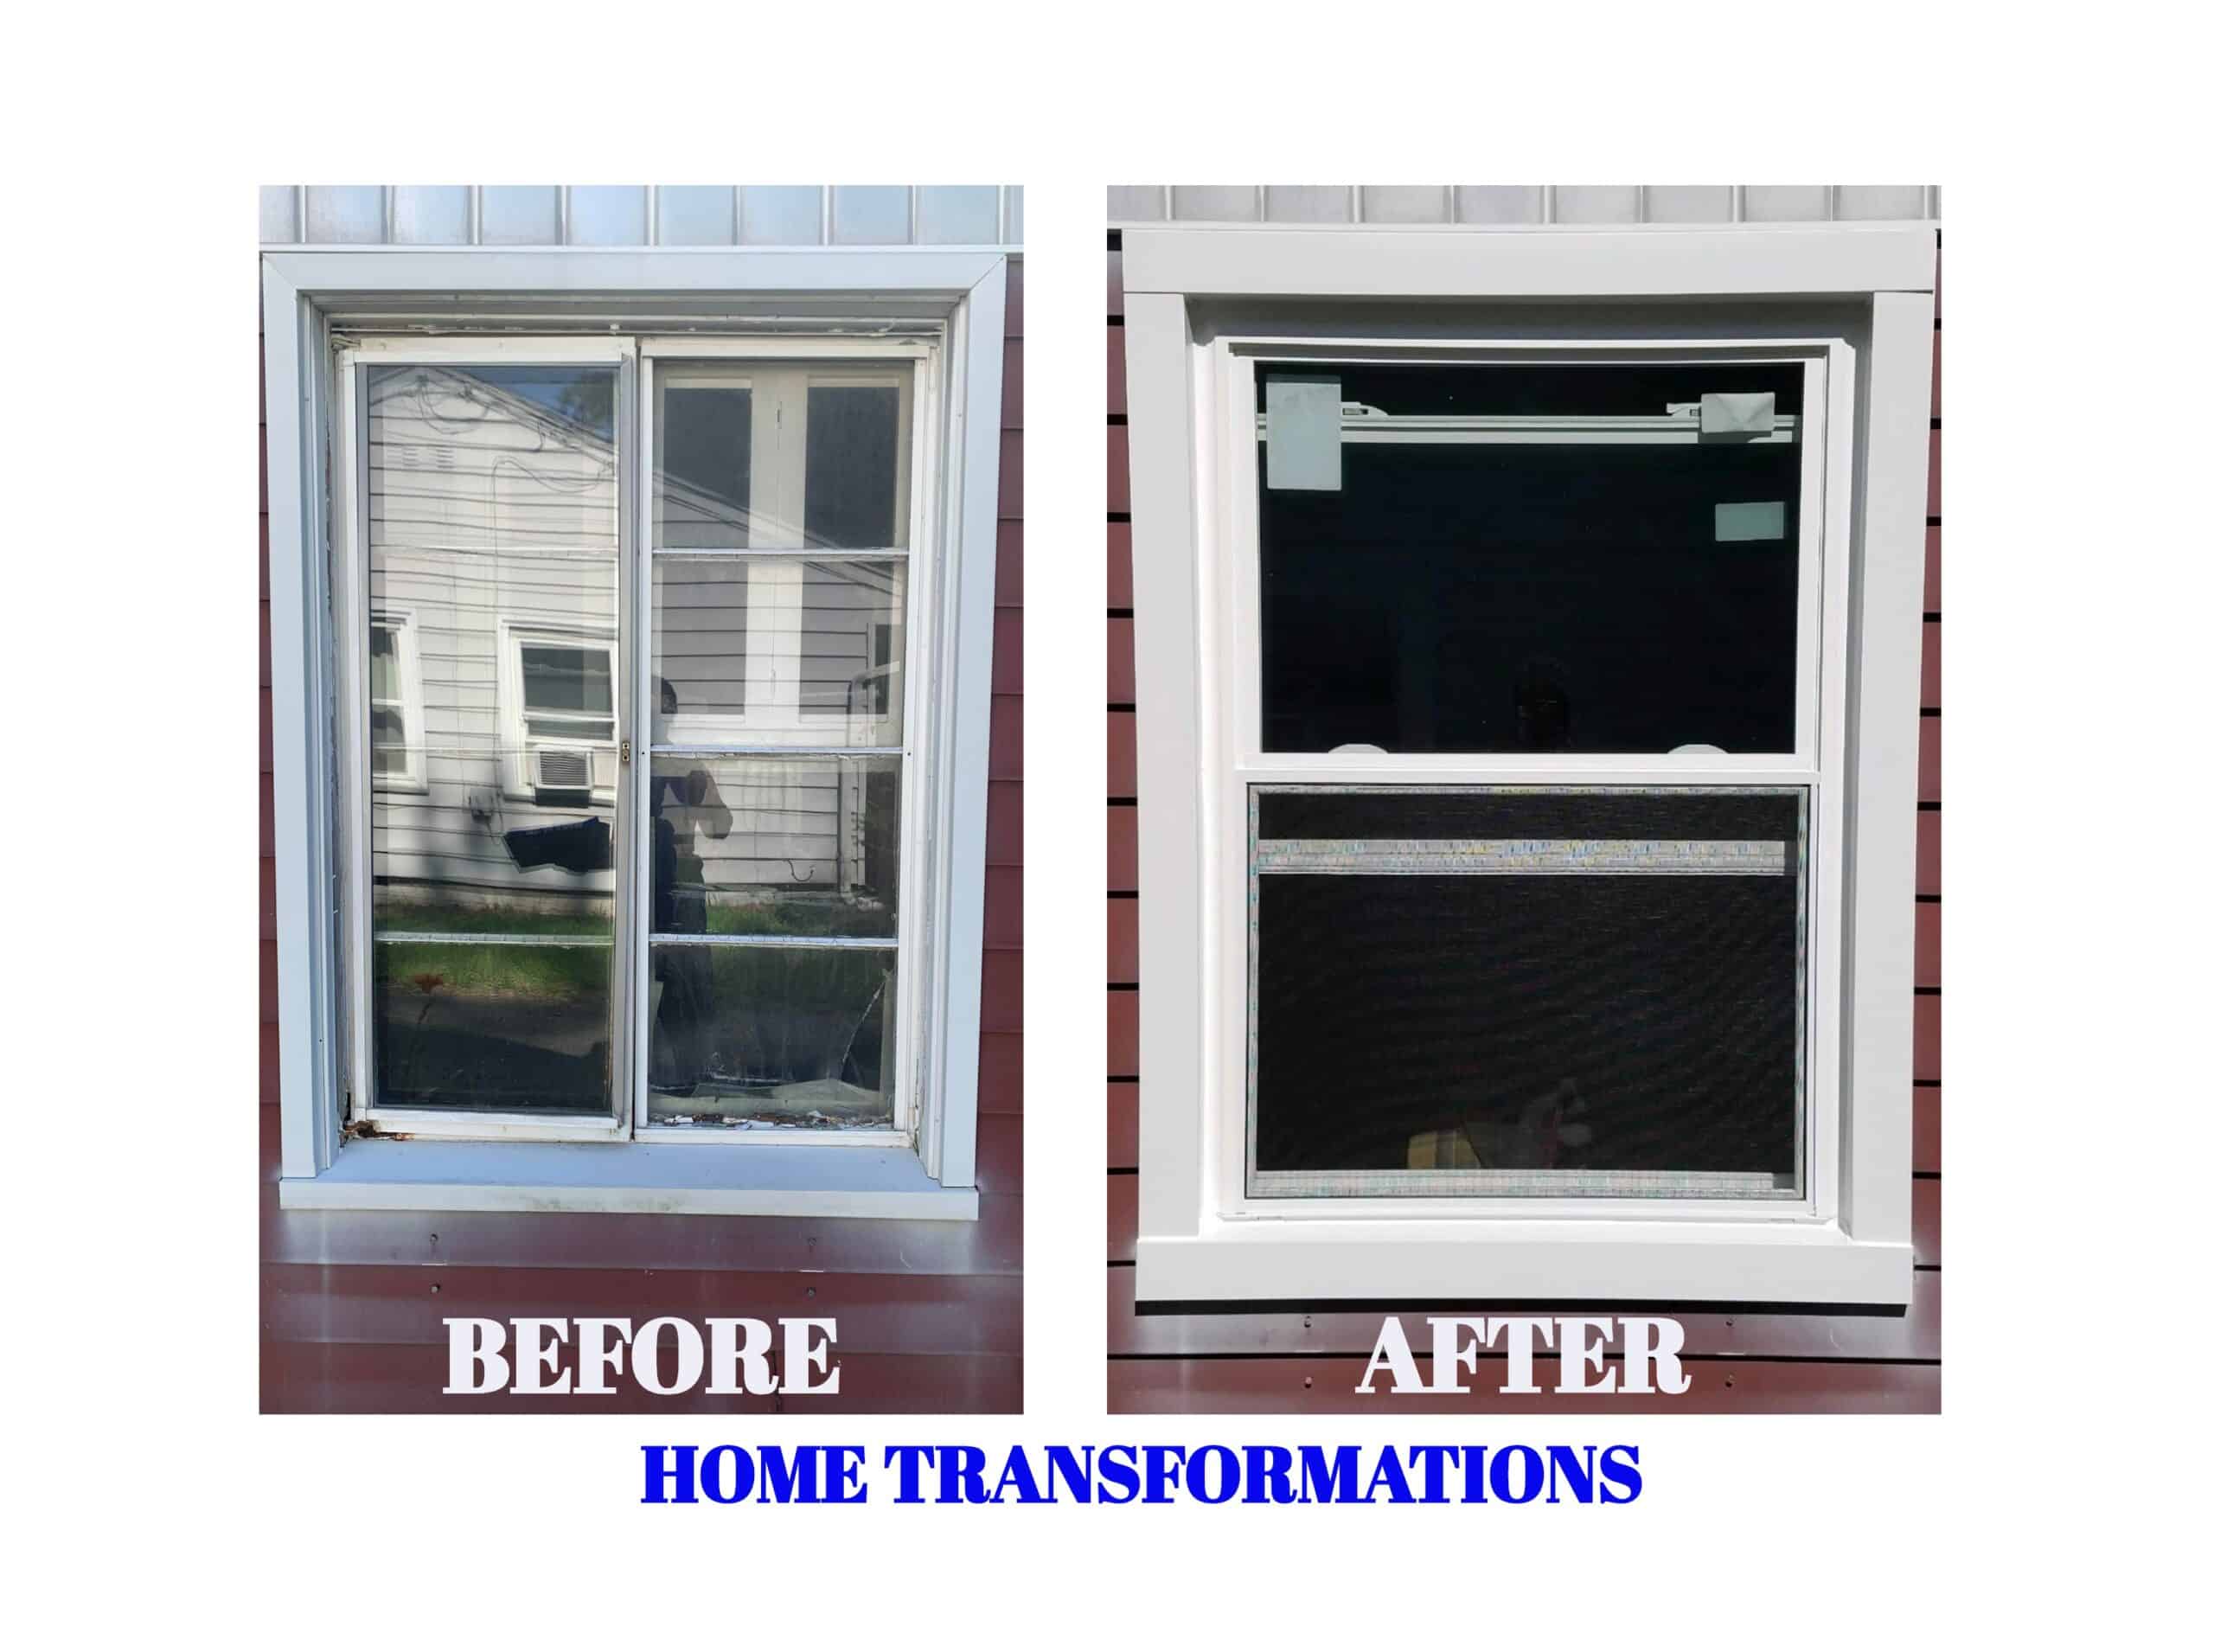 replacement windows in north benton ohio